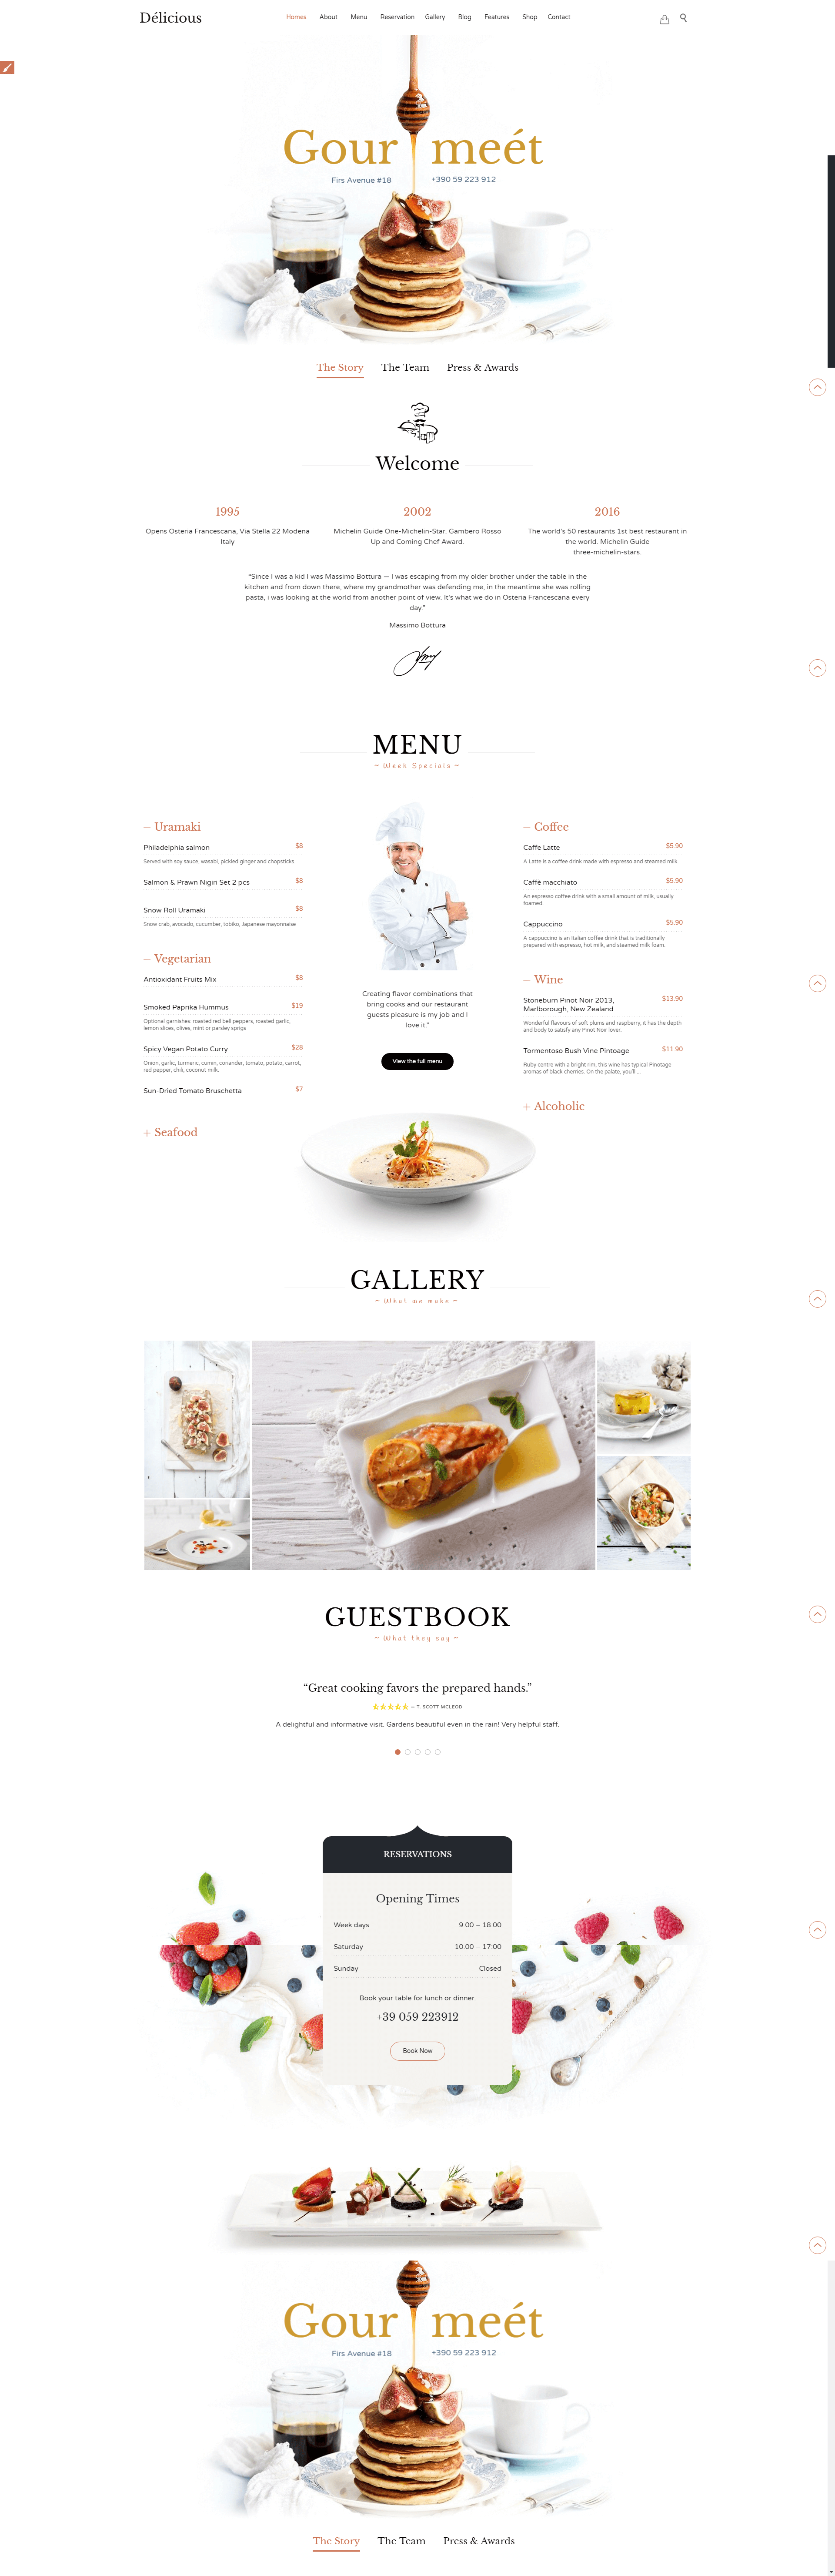 Mẫu thiết kế website nhà hàng quán ăn sang trọng